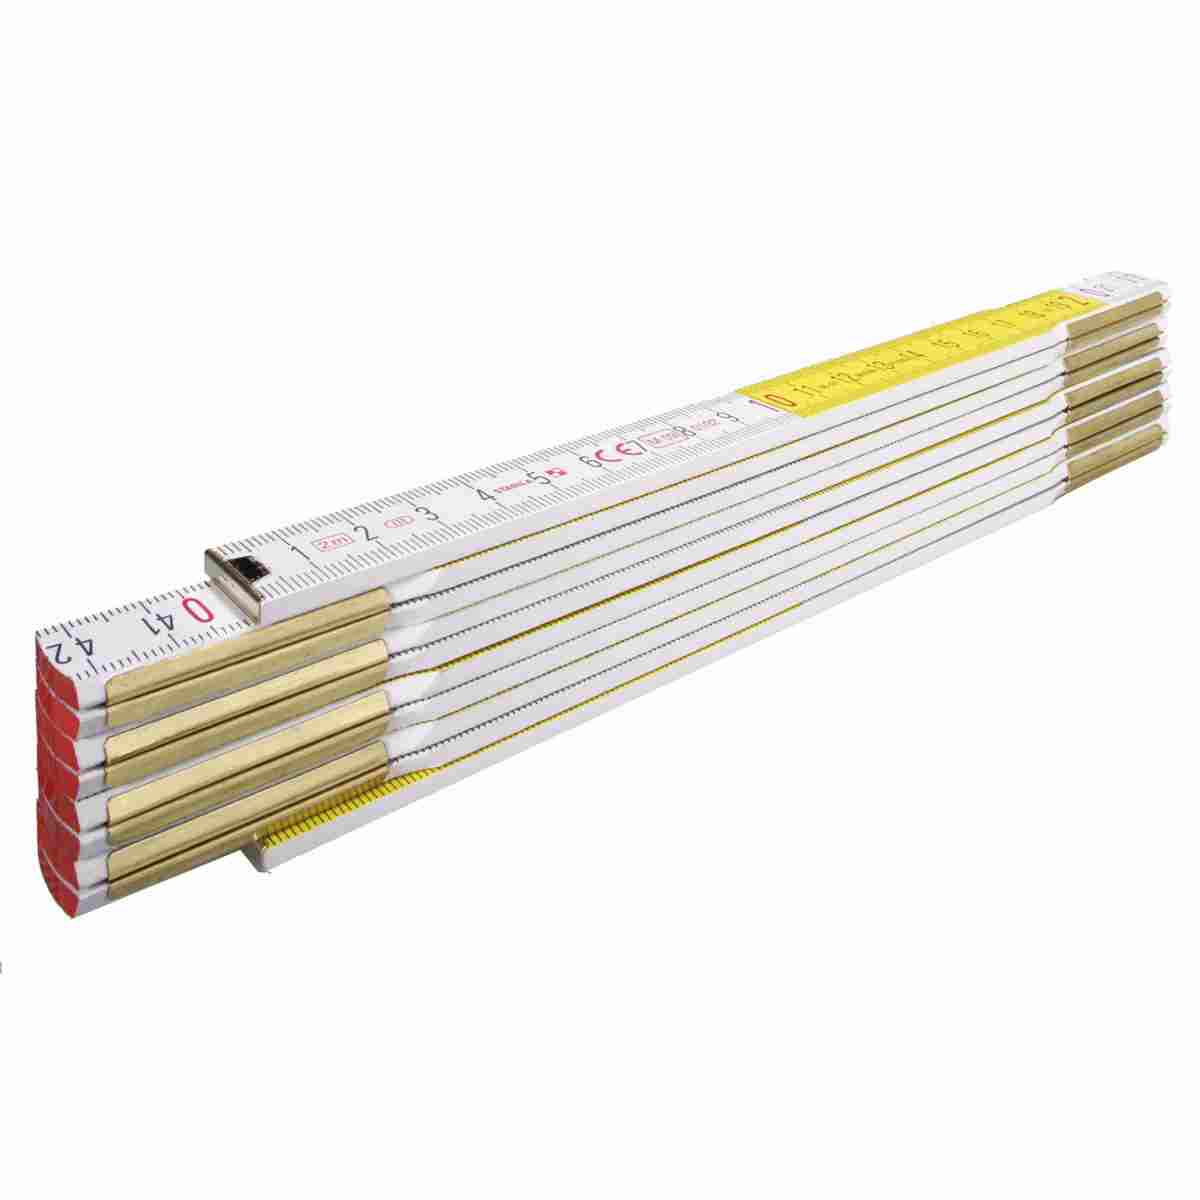 Holzgliedermaßstab weiß/gelb 10 Glieder Länge 2 m von Stabila